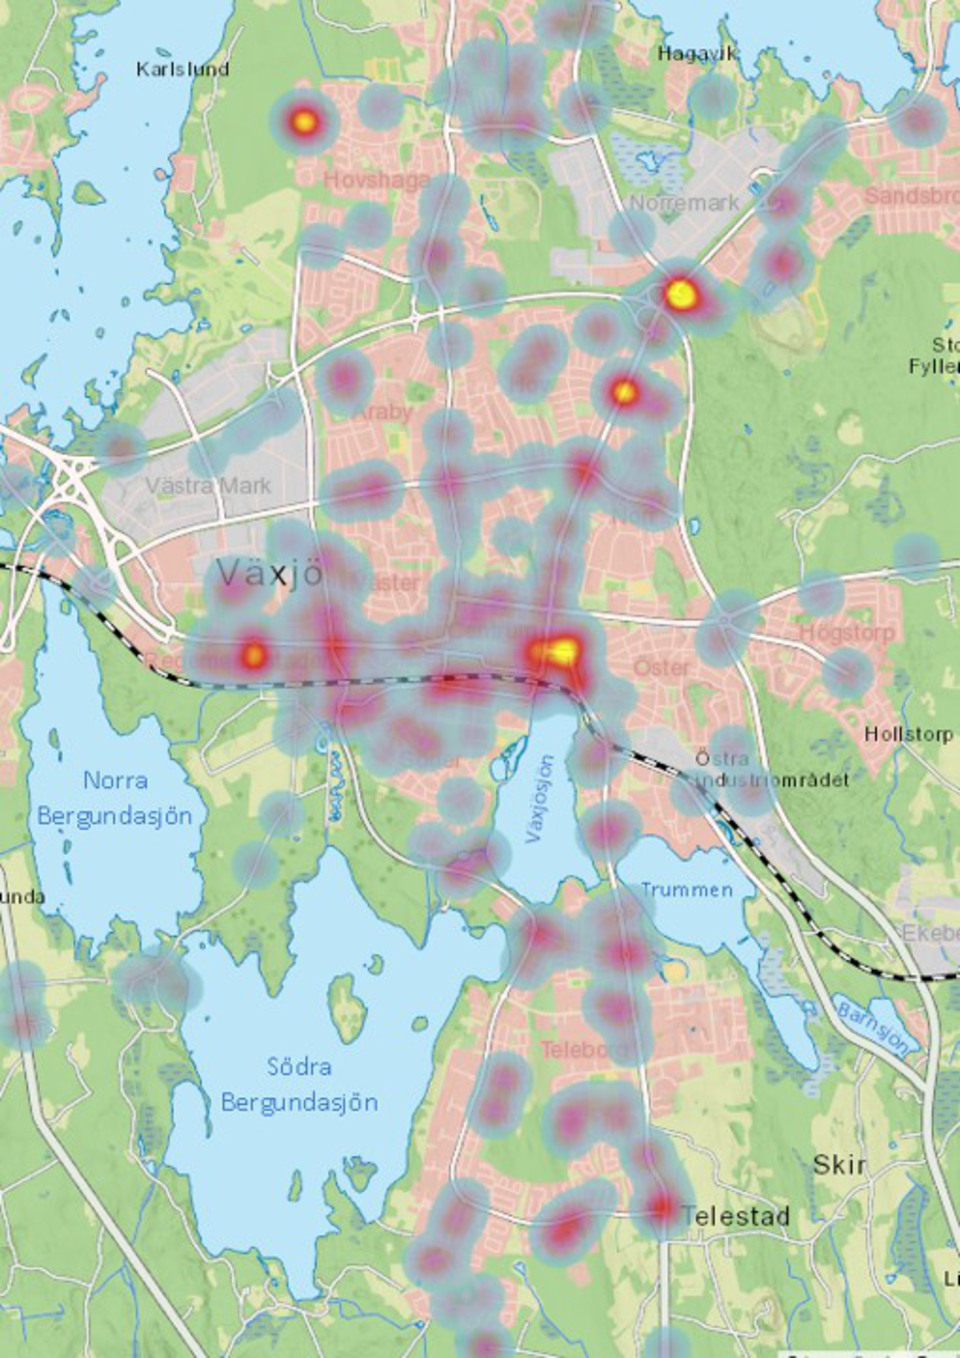 Bild på en karta som visar koncentrationer (”hot spots”) av synpunkter i Växjö stad.